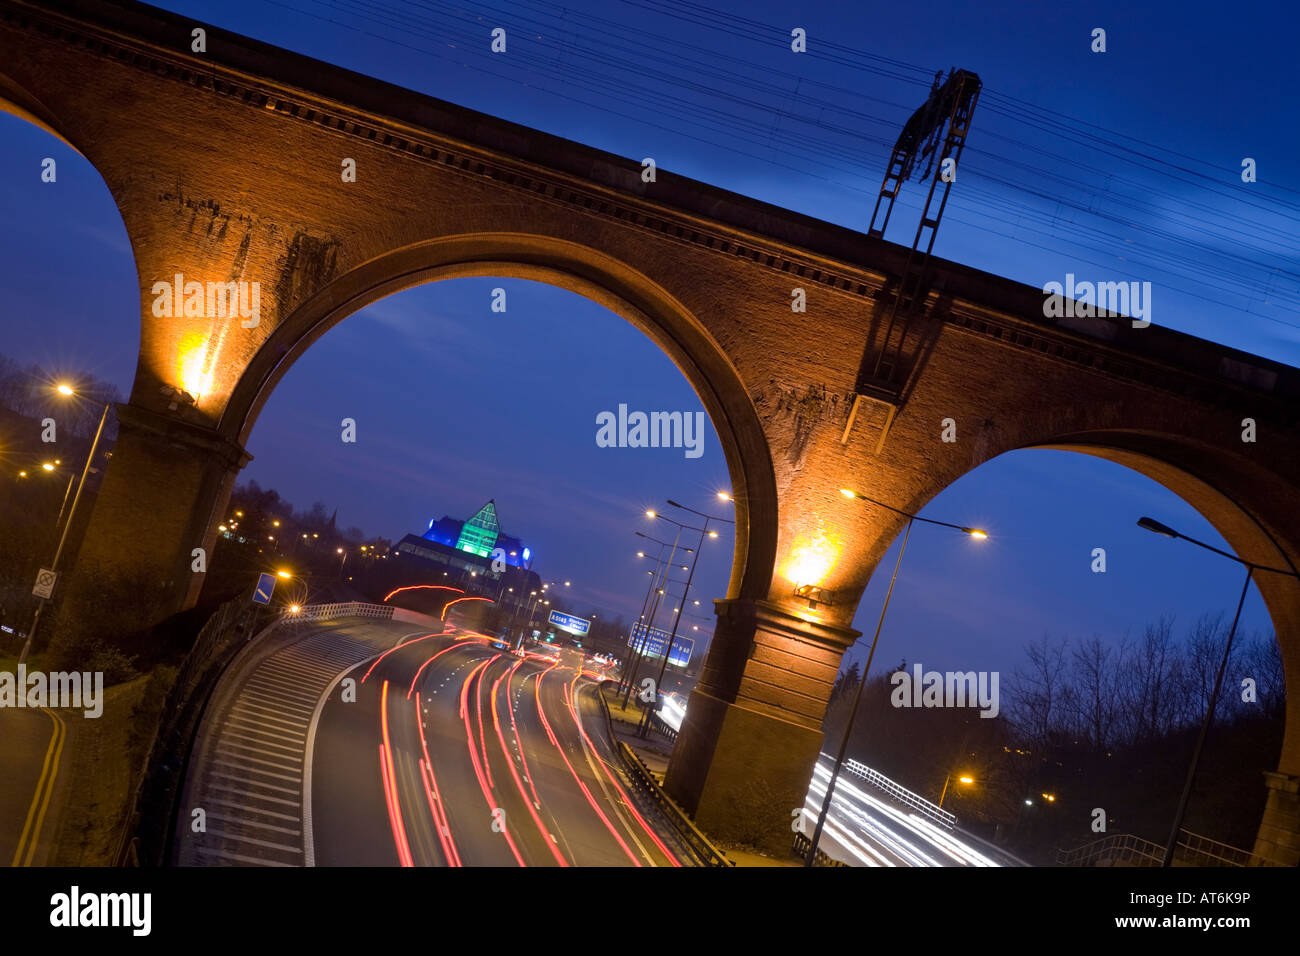 M60 Autobahn, Stockport Pyramide und Viadukt in der Nacht. Stockport, grösseres Manchester, Vereinigtes Königreich. Stockfoto